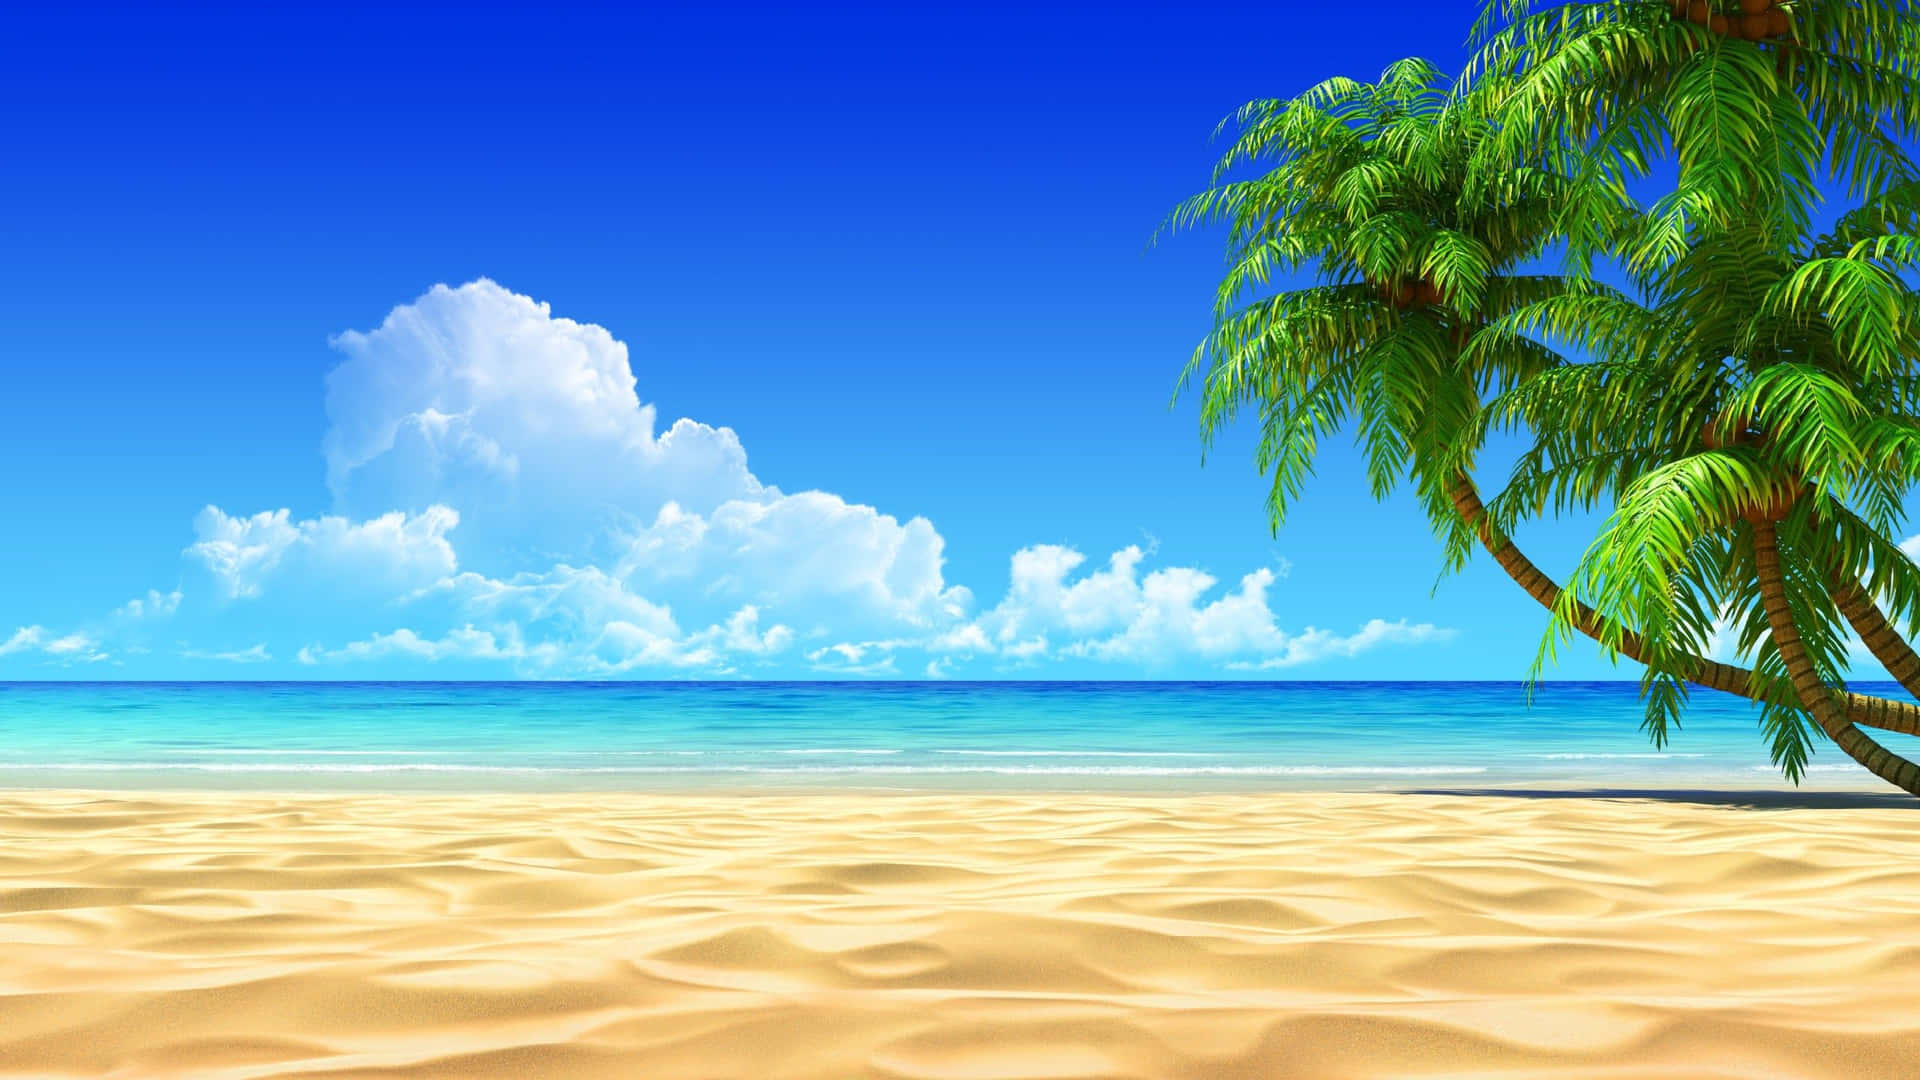 Hình nền bãi biển hè dễ thương sẽ khiến bạn cảm thấy như đang đứng trước một bức tranh sống động và tuyệt đẹp. Hình ảnh này sẽ giúp bạn tăng thêm sự thoải mái và cảm giác sảng khoái, đem đến những giờ nghỉ ngơi thật tuyệt vời.